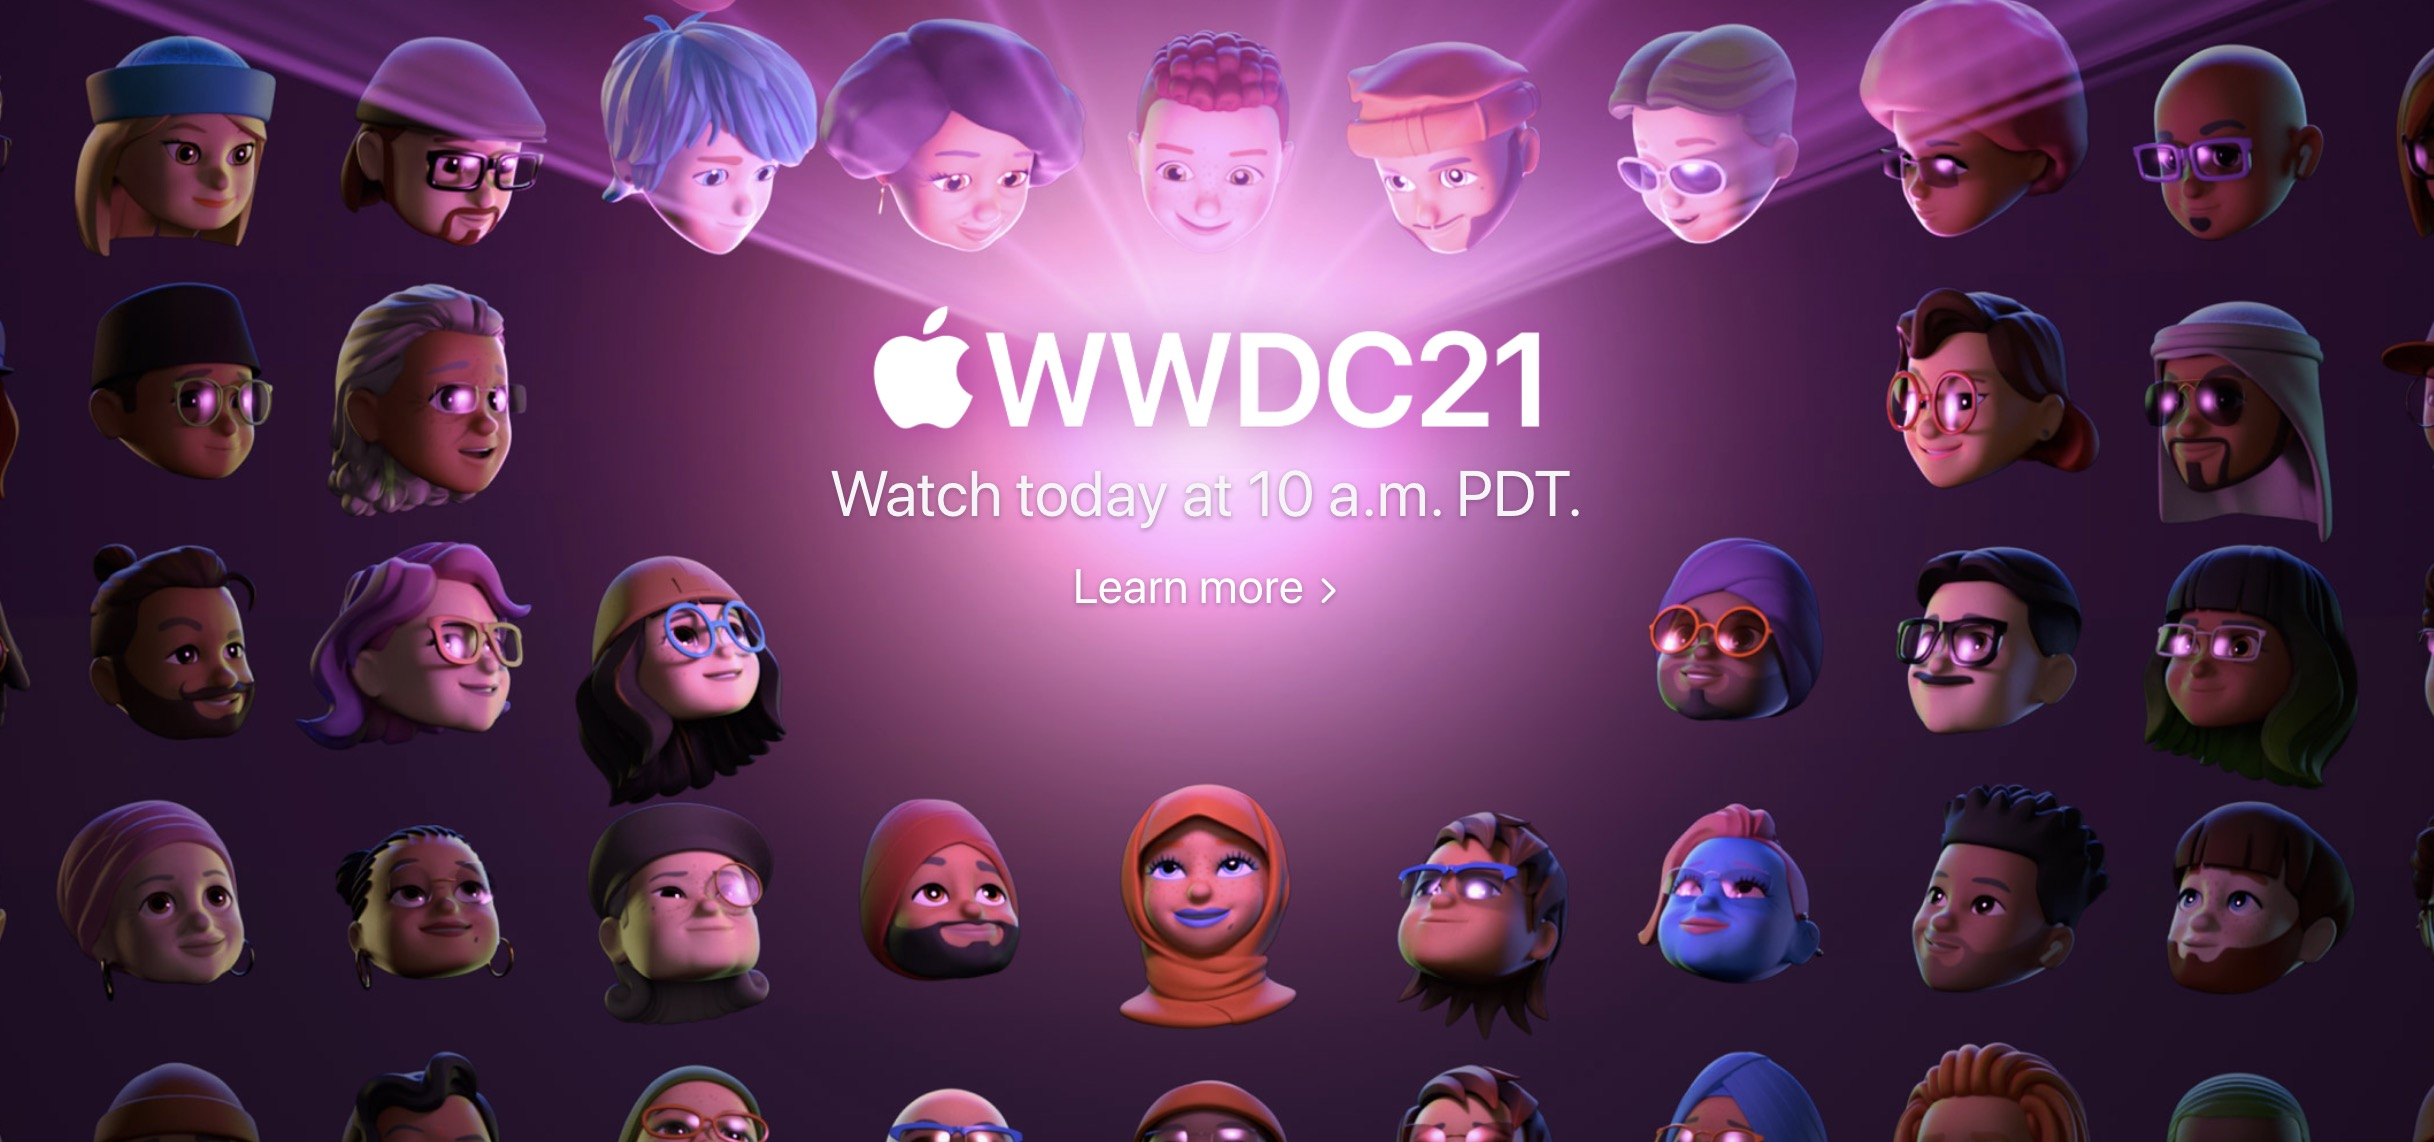 Seguire la Diretta Live del WWDC 2021